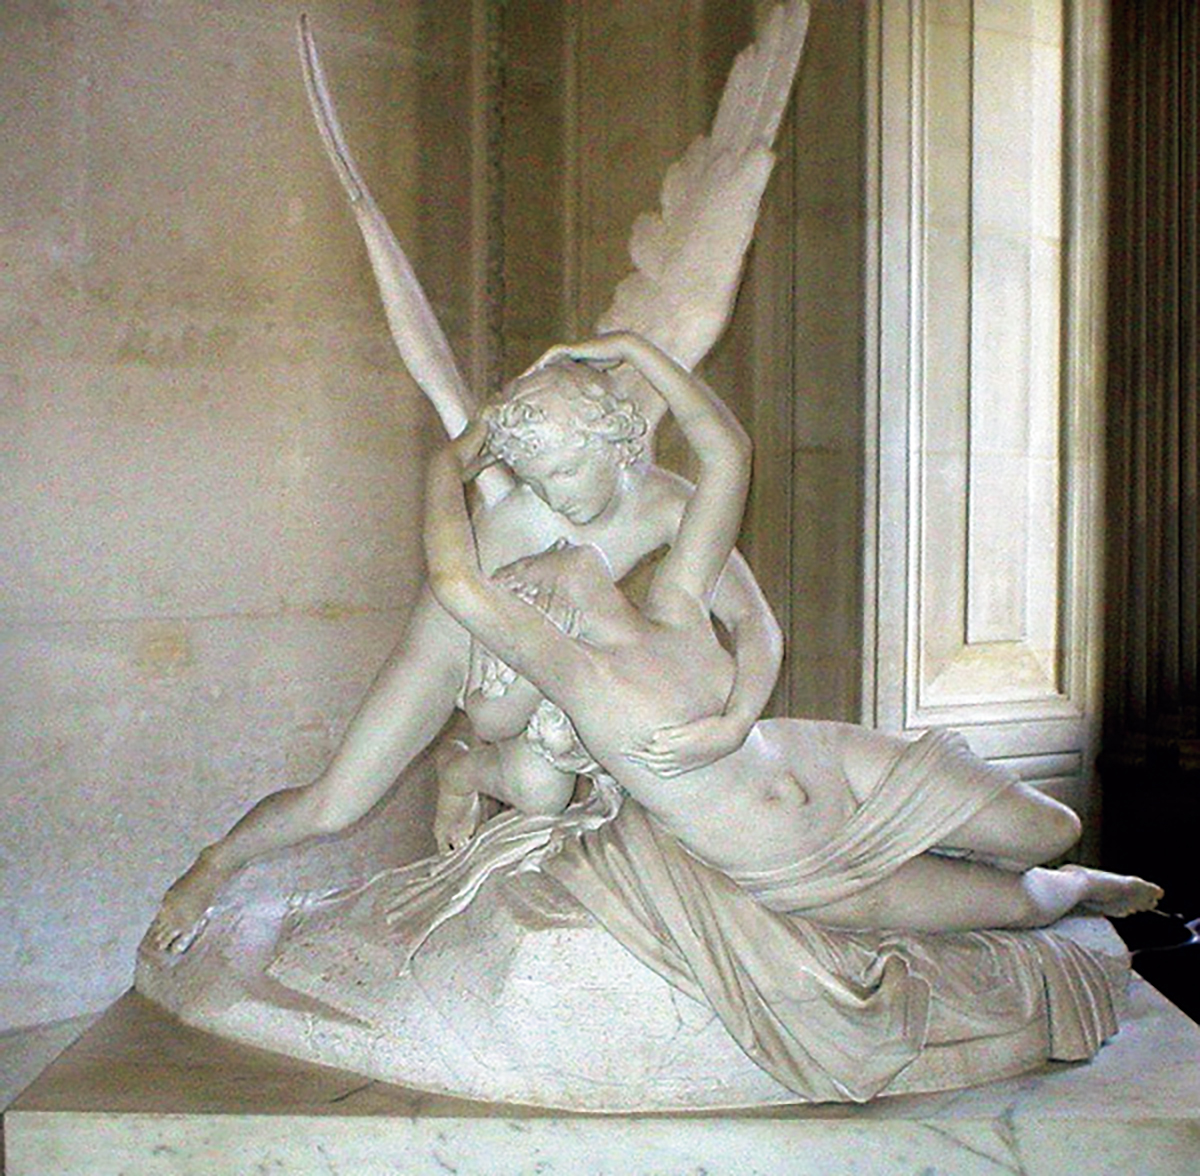 大理石でなめらかに仕上げられた美しい二人は、愛の神アモルと人間の女性プシュケ。
住所:Rue de Rivoli, 75001 Paris 営業時間:9:00～18:00(金〜21:45)